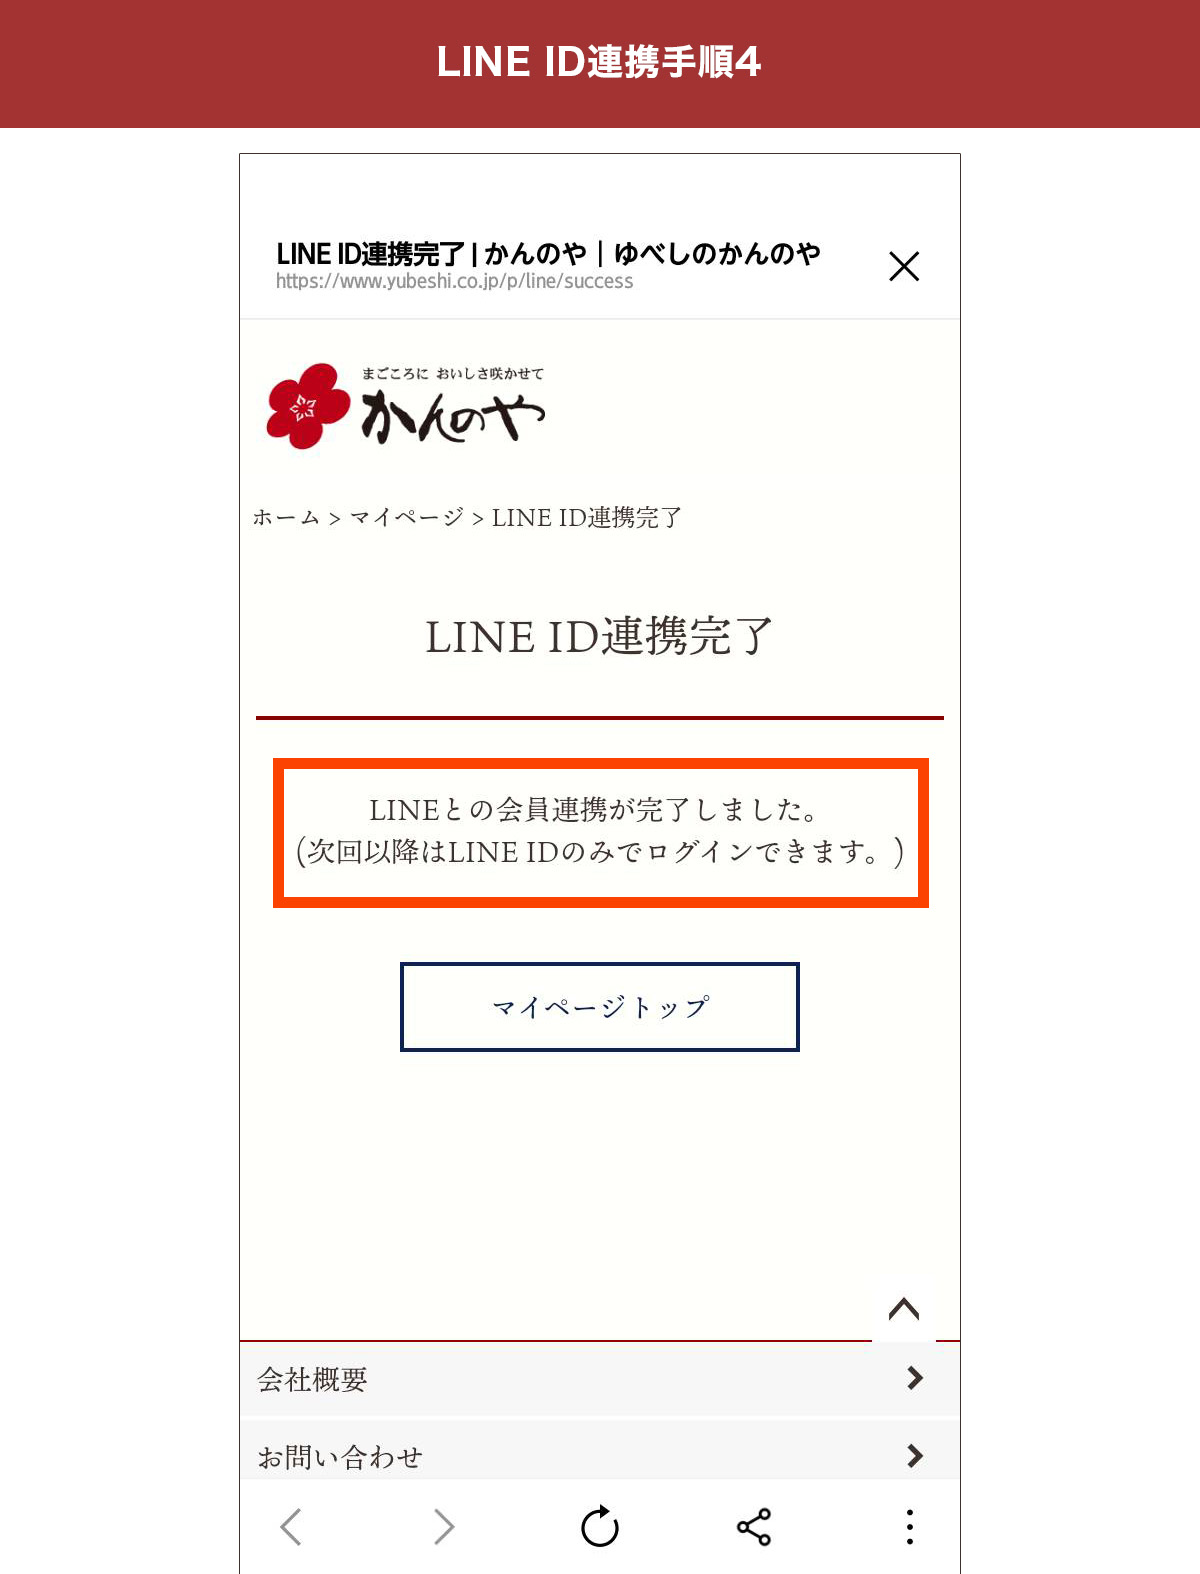 ラインID連携完了ページが表示されたらOK。かんのや公式オンラインショップの会員情報とLINEアカウントが連携されています。